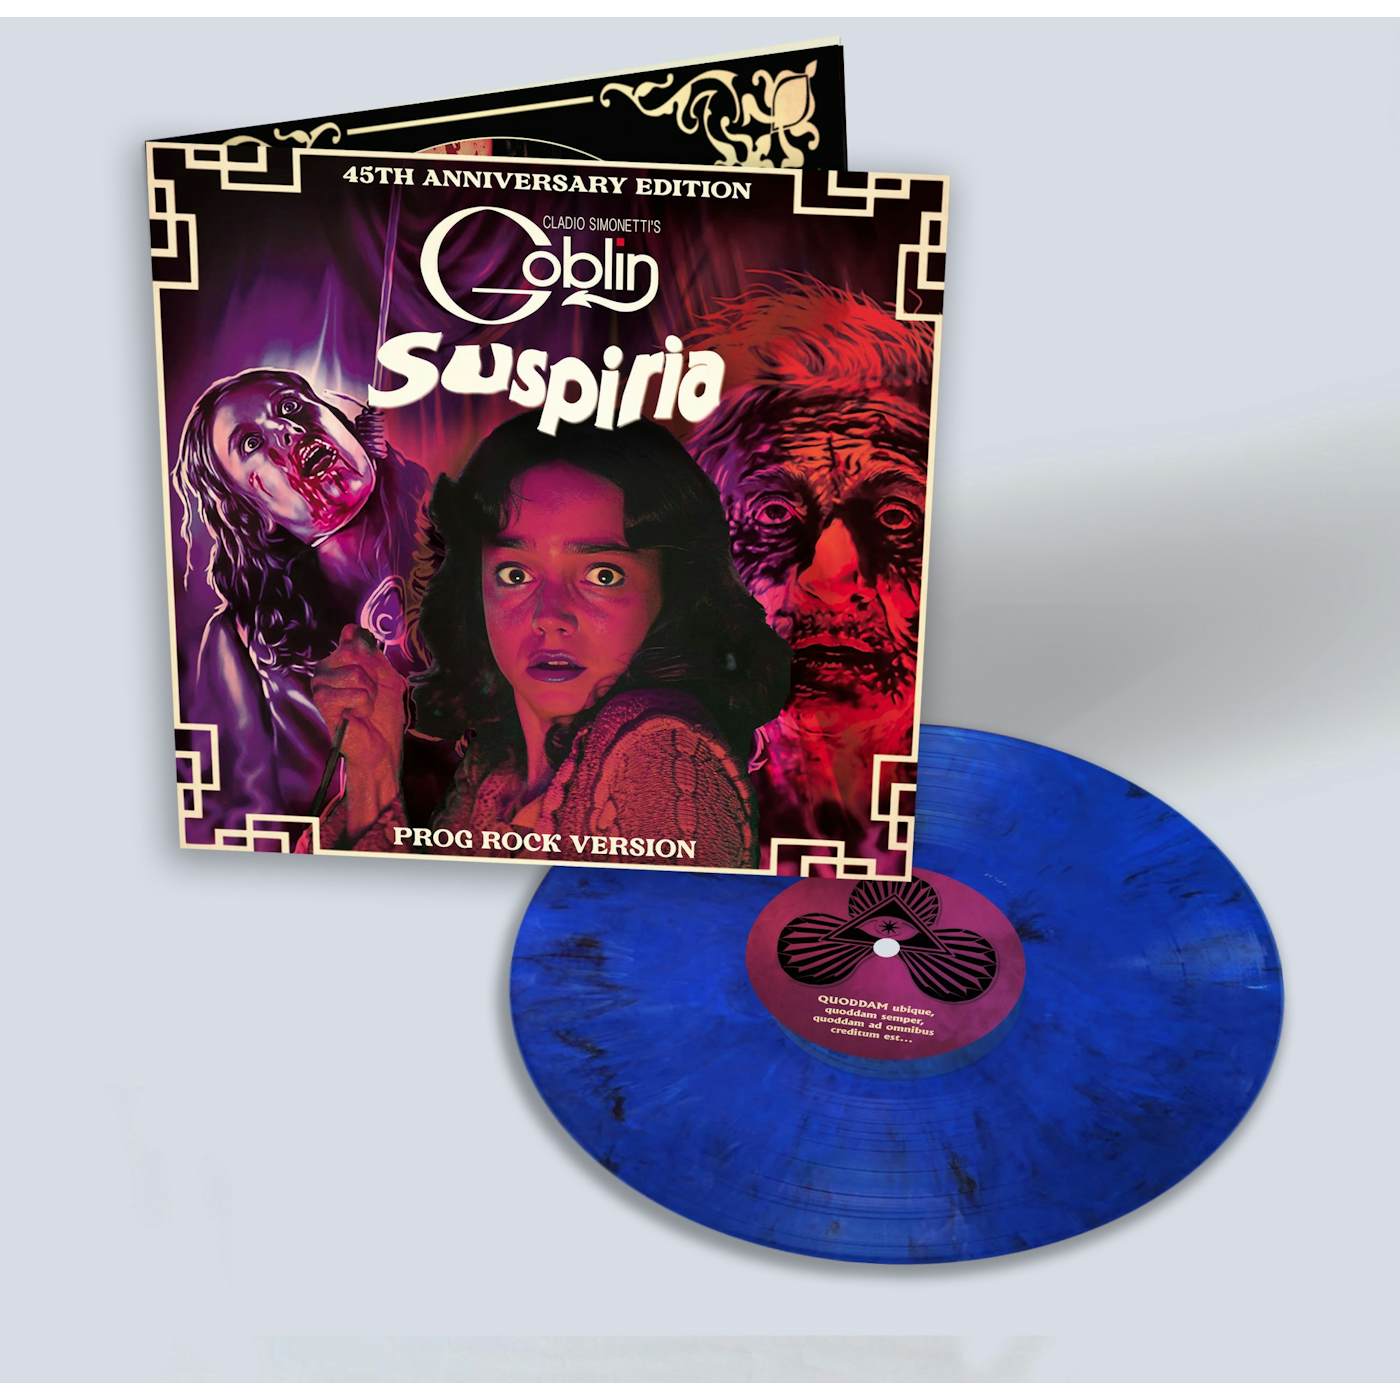 Claudio Simonetti's Goblin SUSPIRIA Original Soundtrack (45TH ANNIVERSARY/PROG ROCK VERSION/DELUXE) Vinyl Record